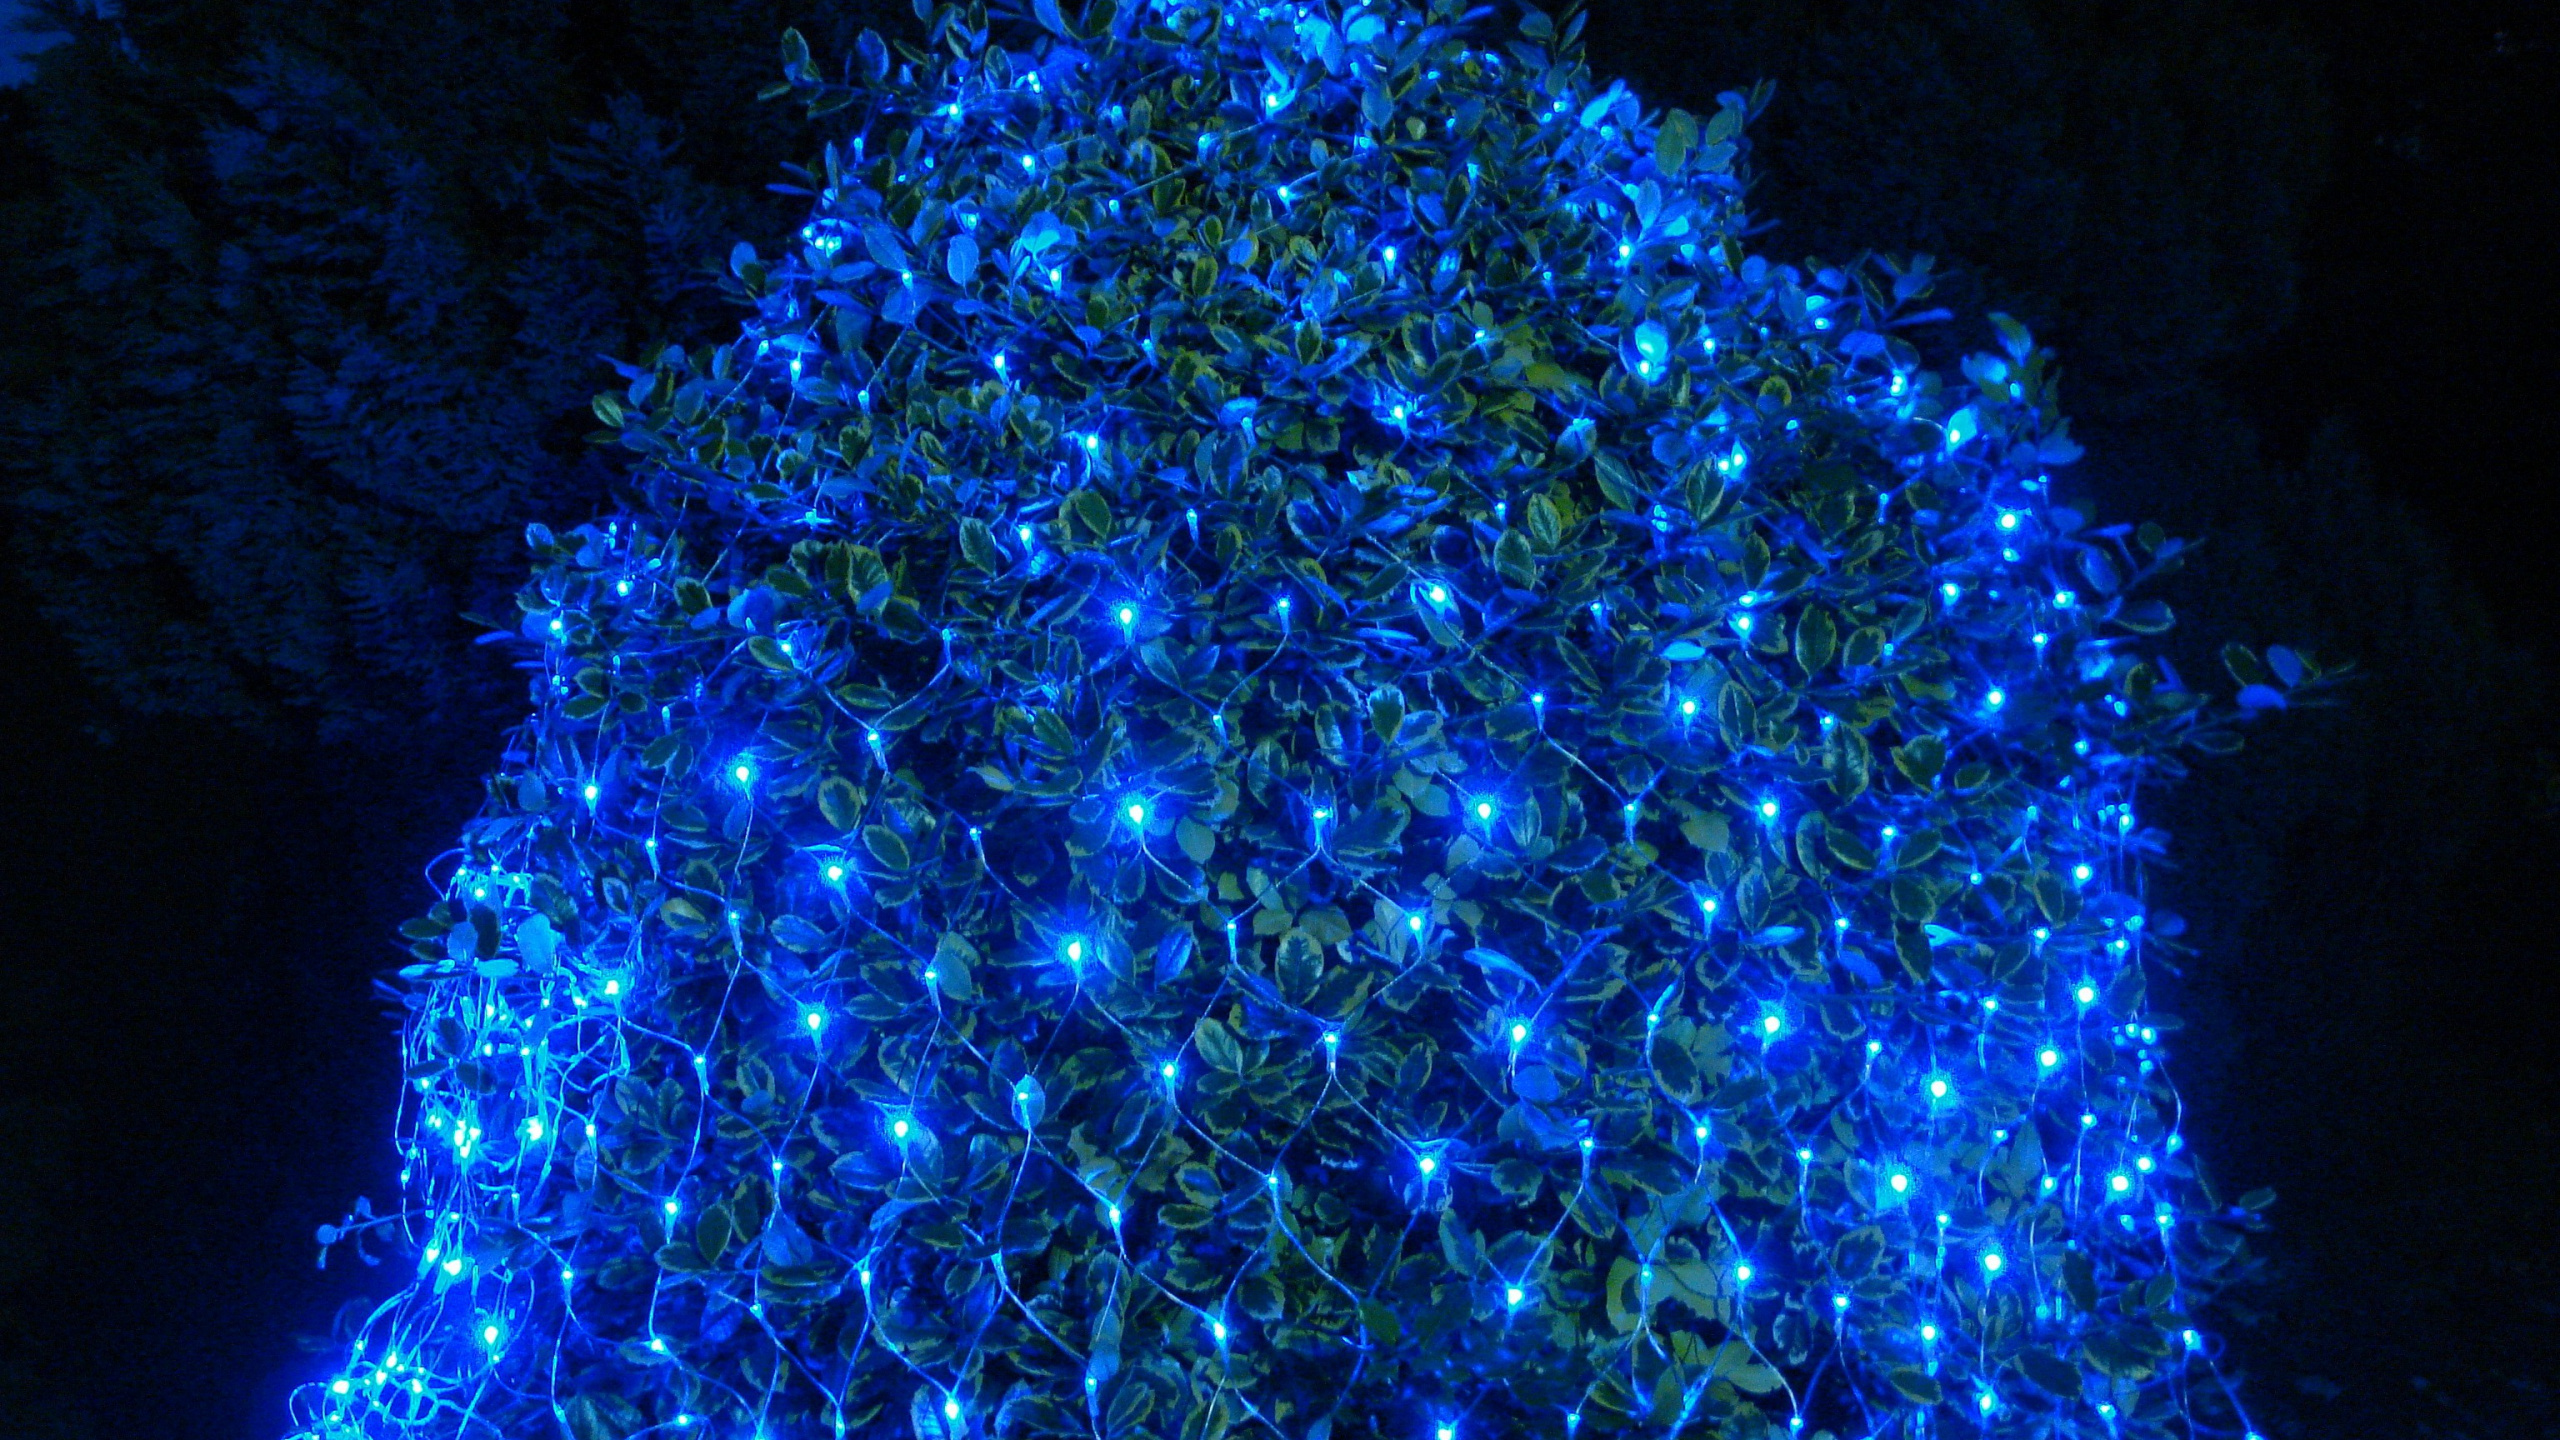 Led-Lampe, Weihnachtsbeleuchtung, Nachtlicht, Licht, Blau. Wallpaper in 2560x1440 Resolution